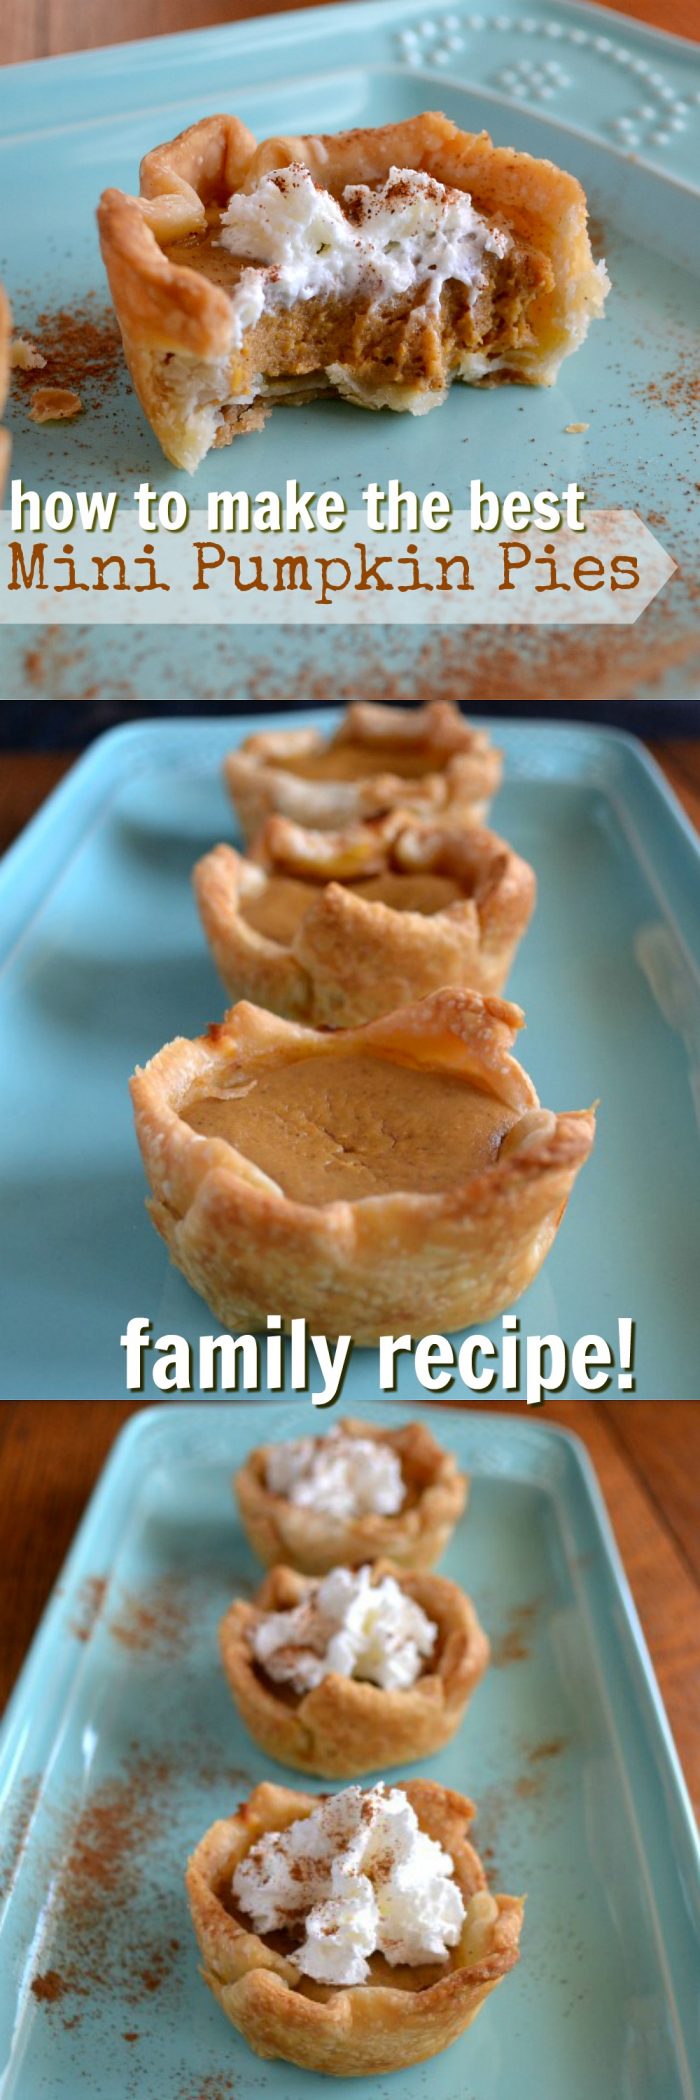 how to make grandma's mini pumpkin pies!